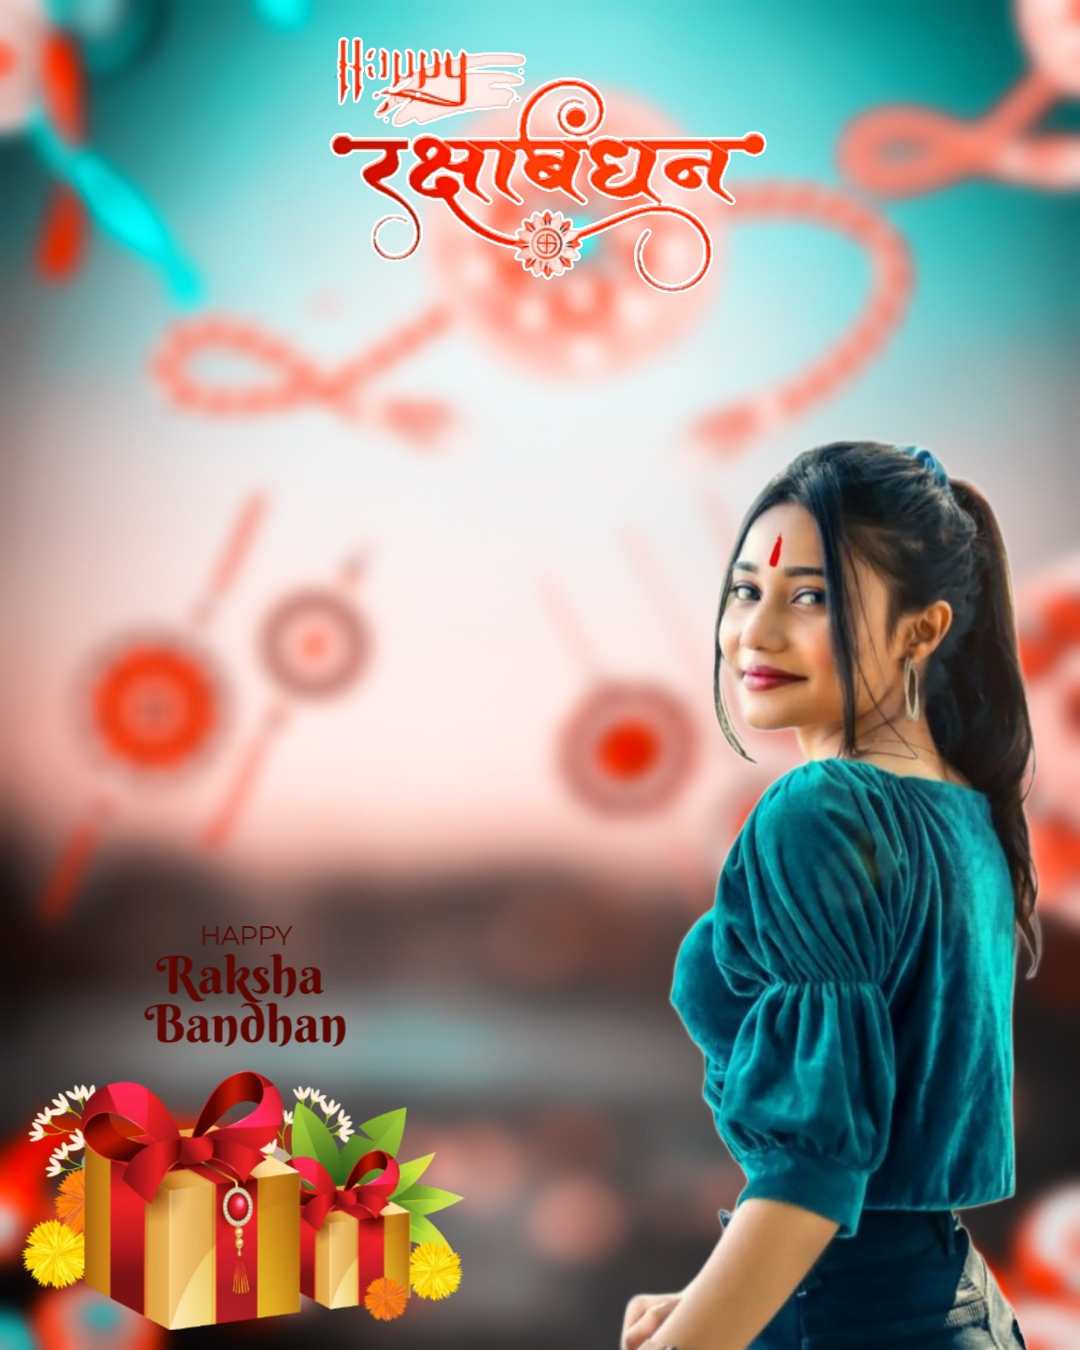 Best Raksha Bandhan Backgrounds HD for Editing